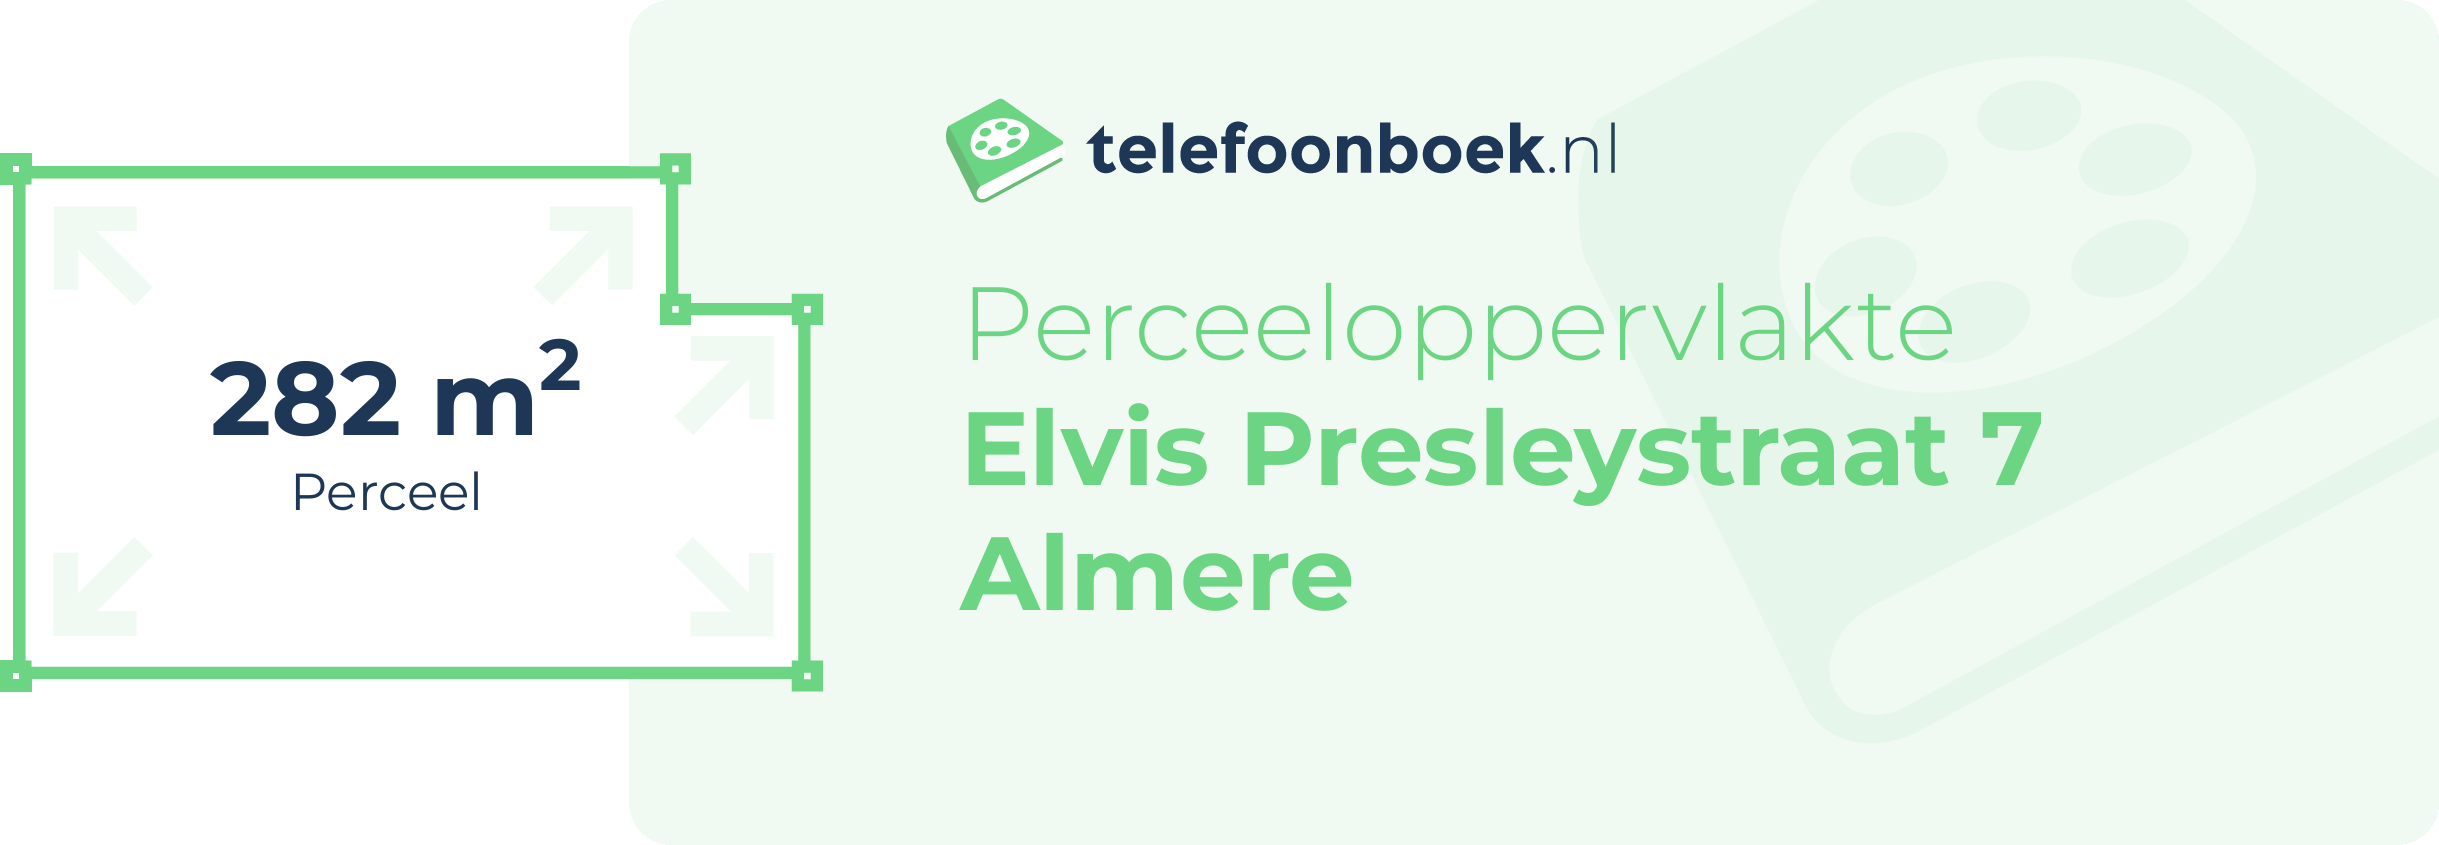 Perceeloppervlakte Elvis Presleystraat 7 Almere